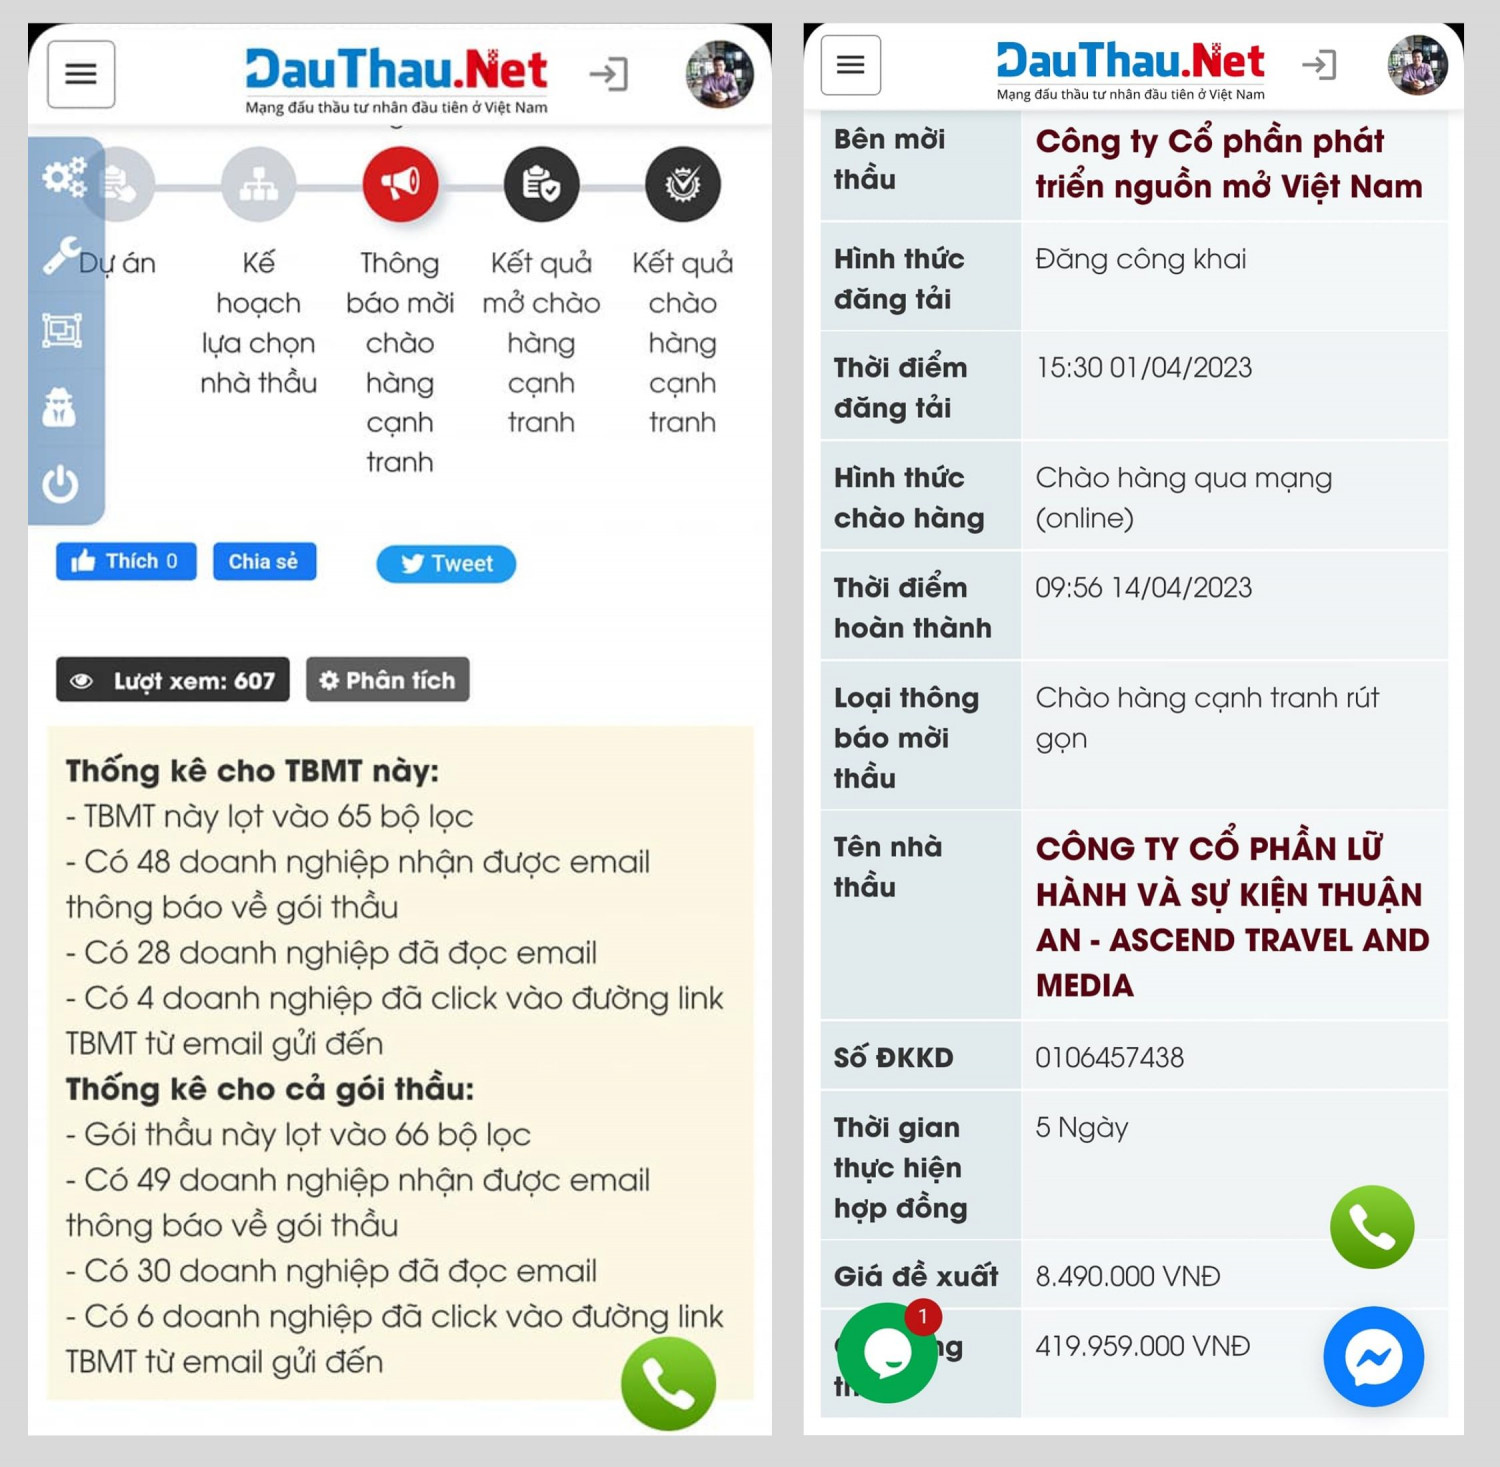 Hiệu quả khi sử dụng DauThau.Net để mời thầu